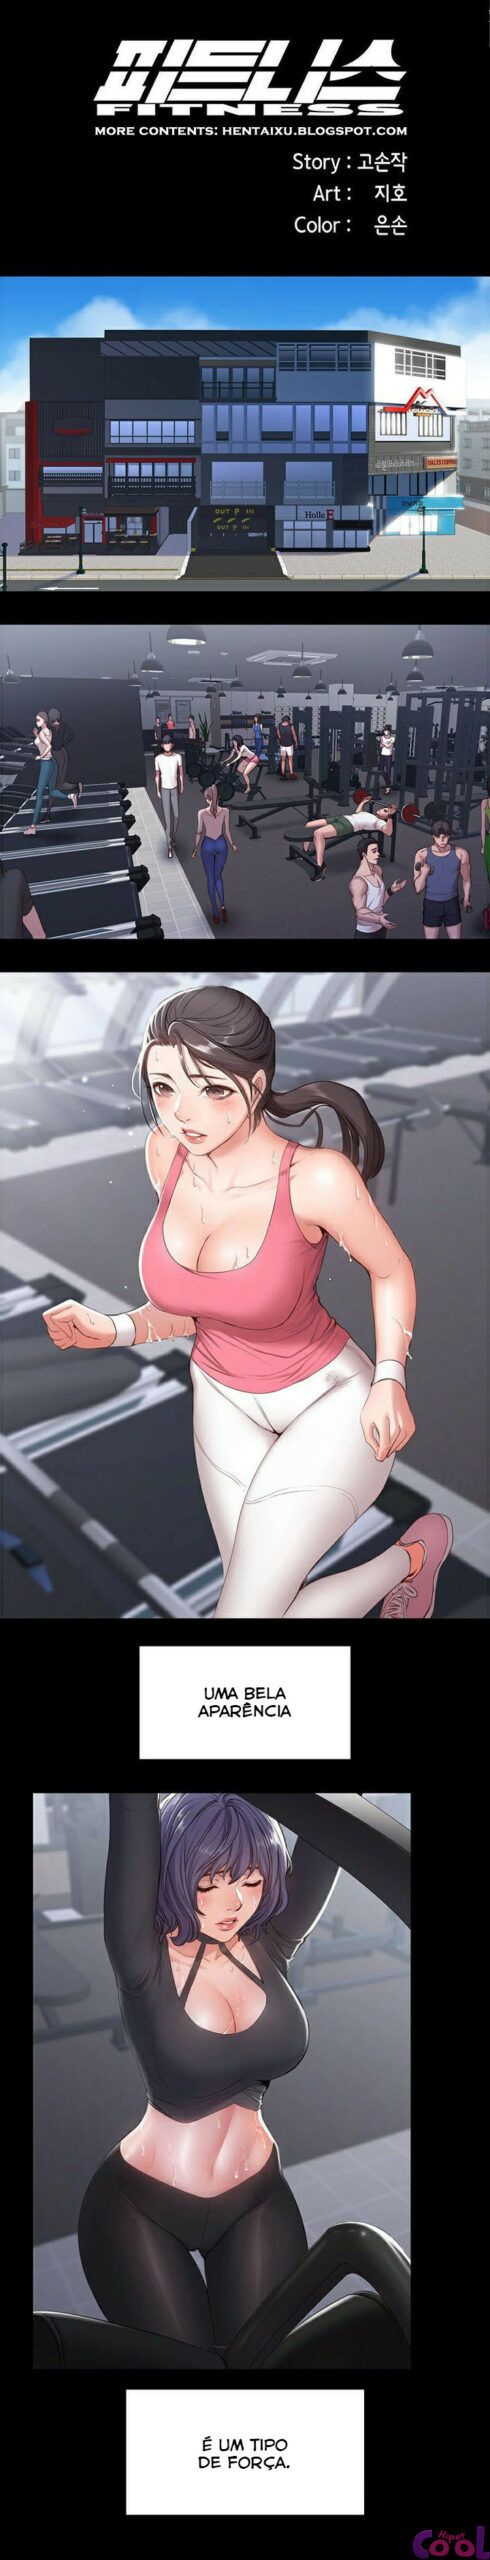 Fitness - Hentai de sexo na academia